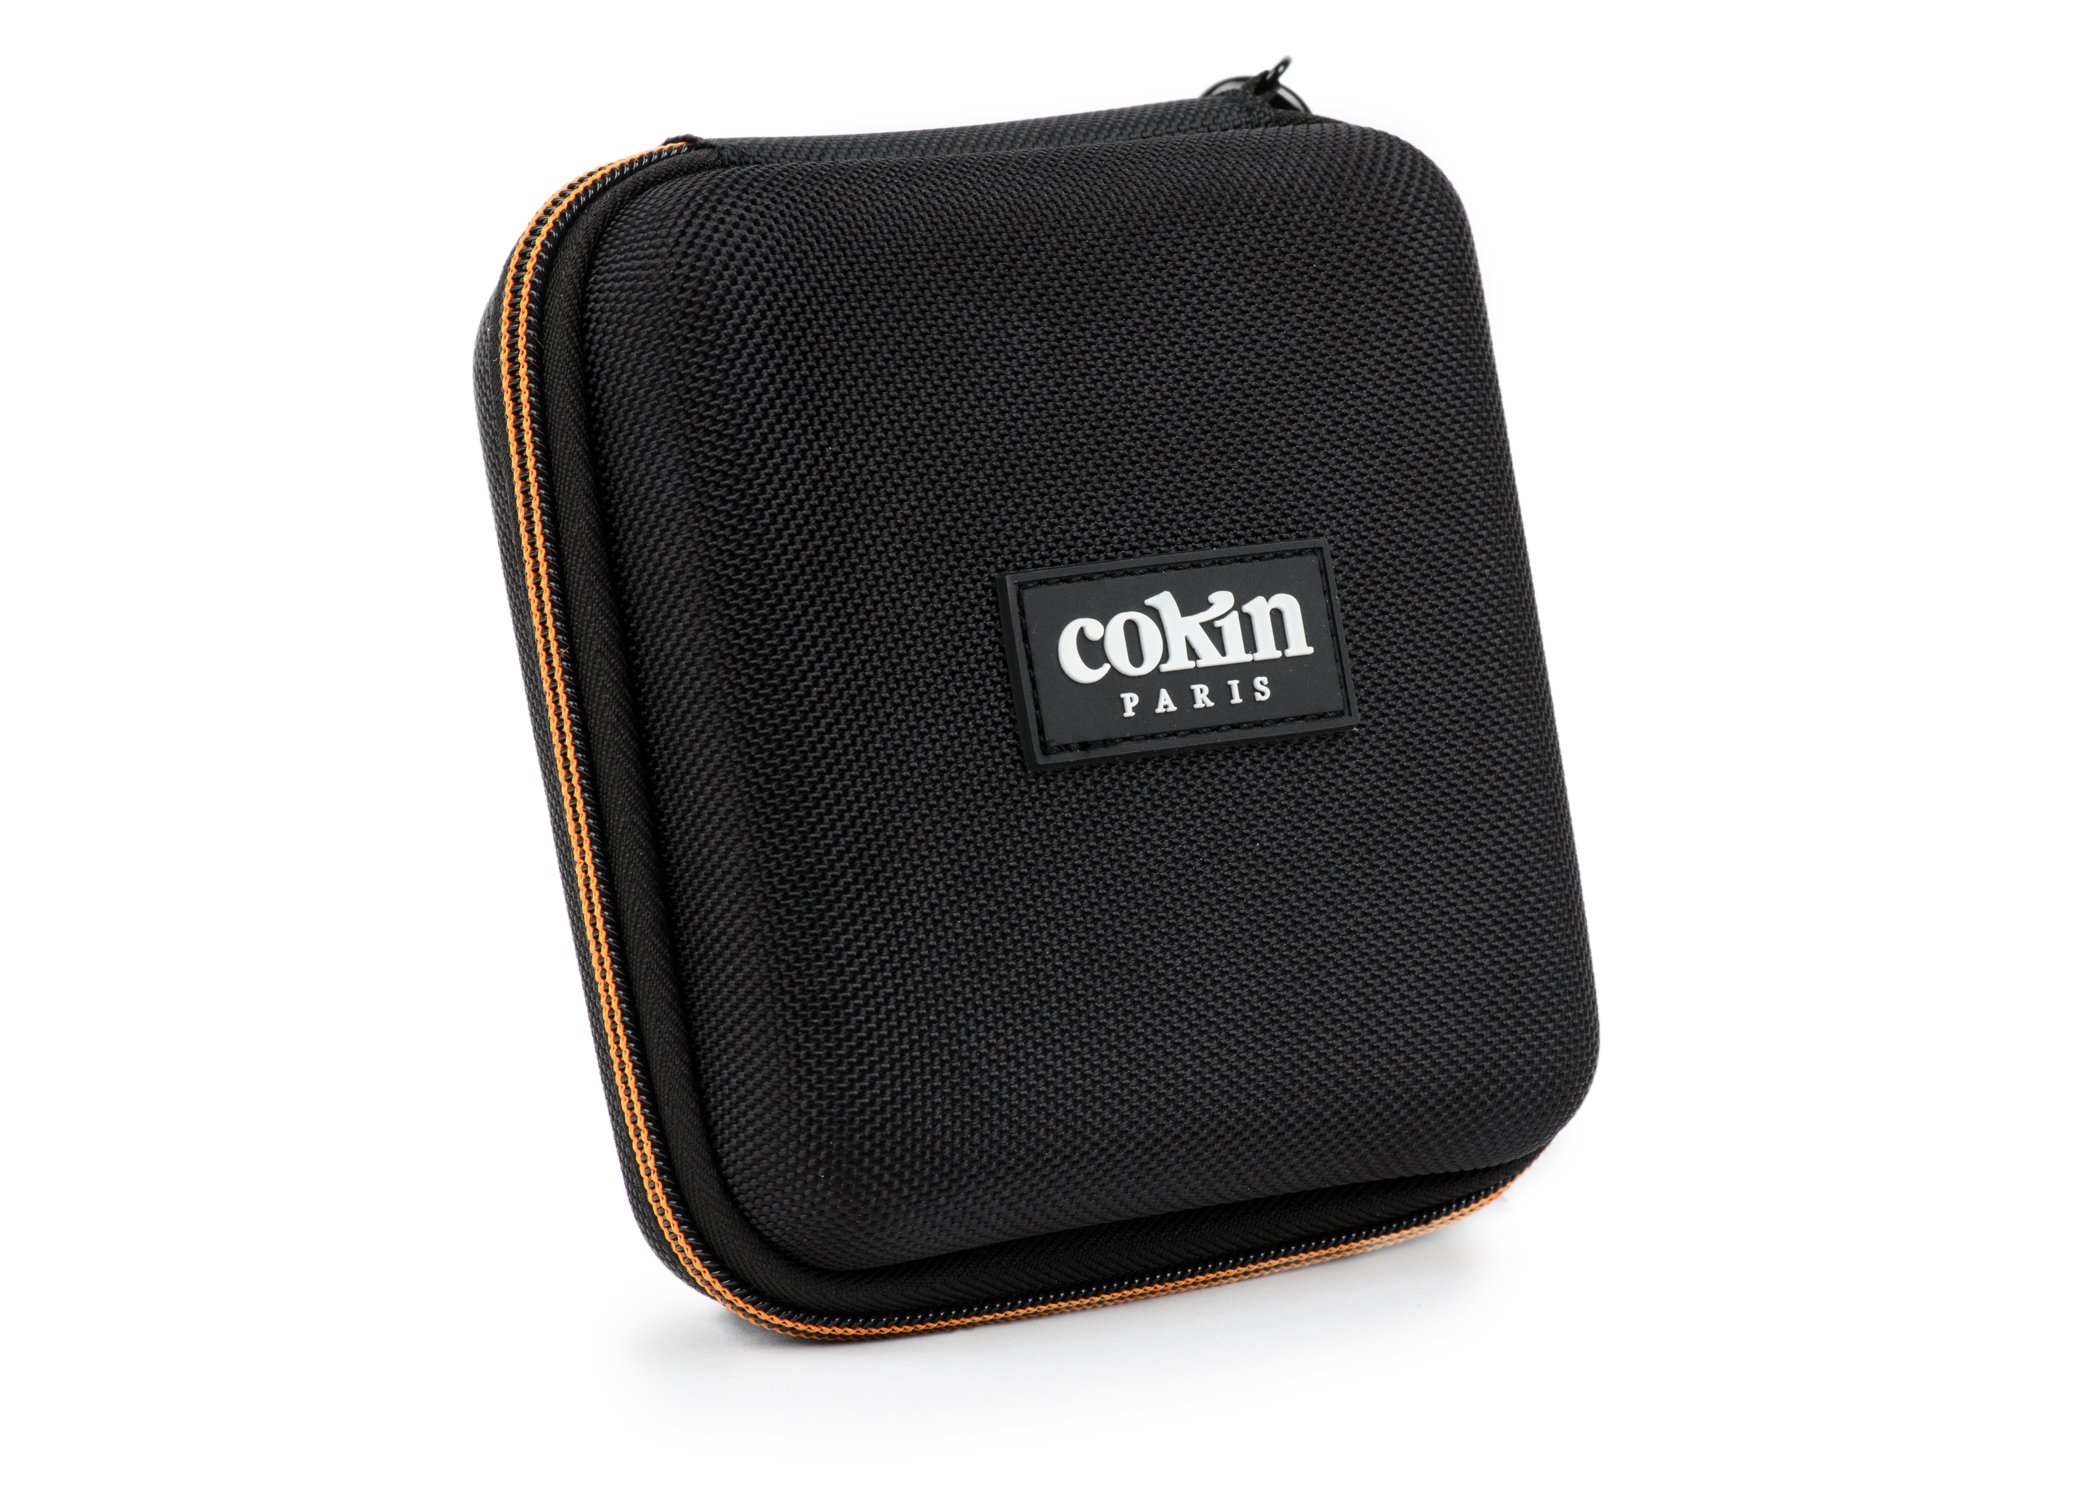 Cokin WP2R3068 Filtertasche für 5 Filter P-Serie schwarz